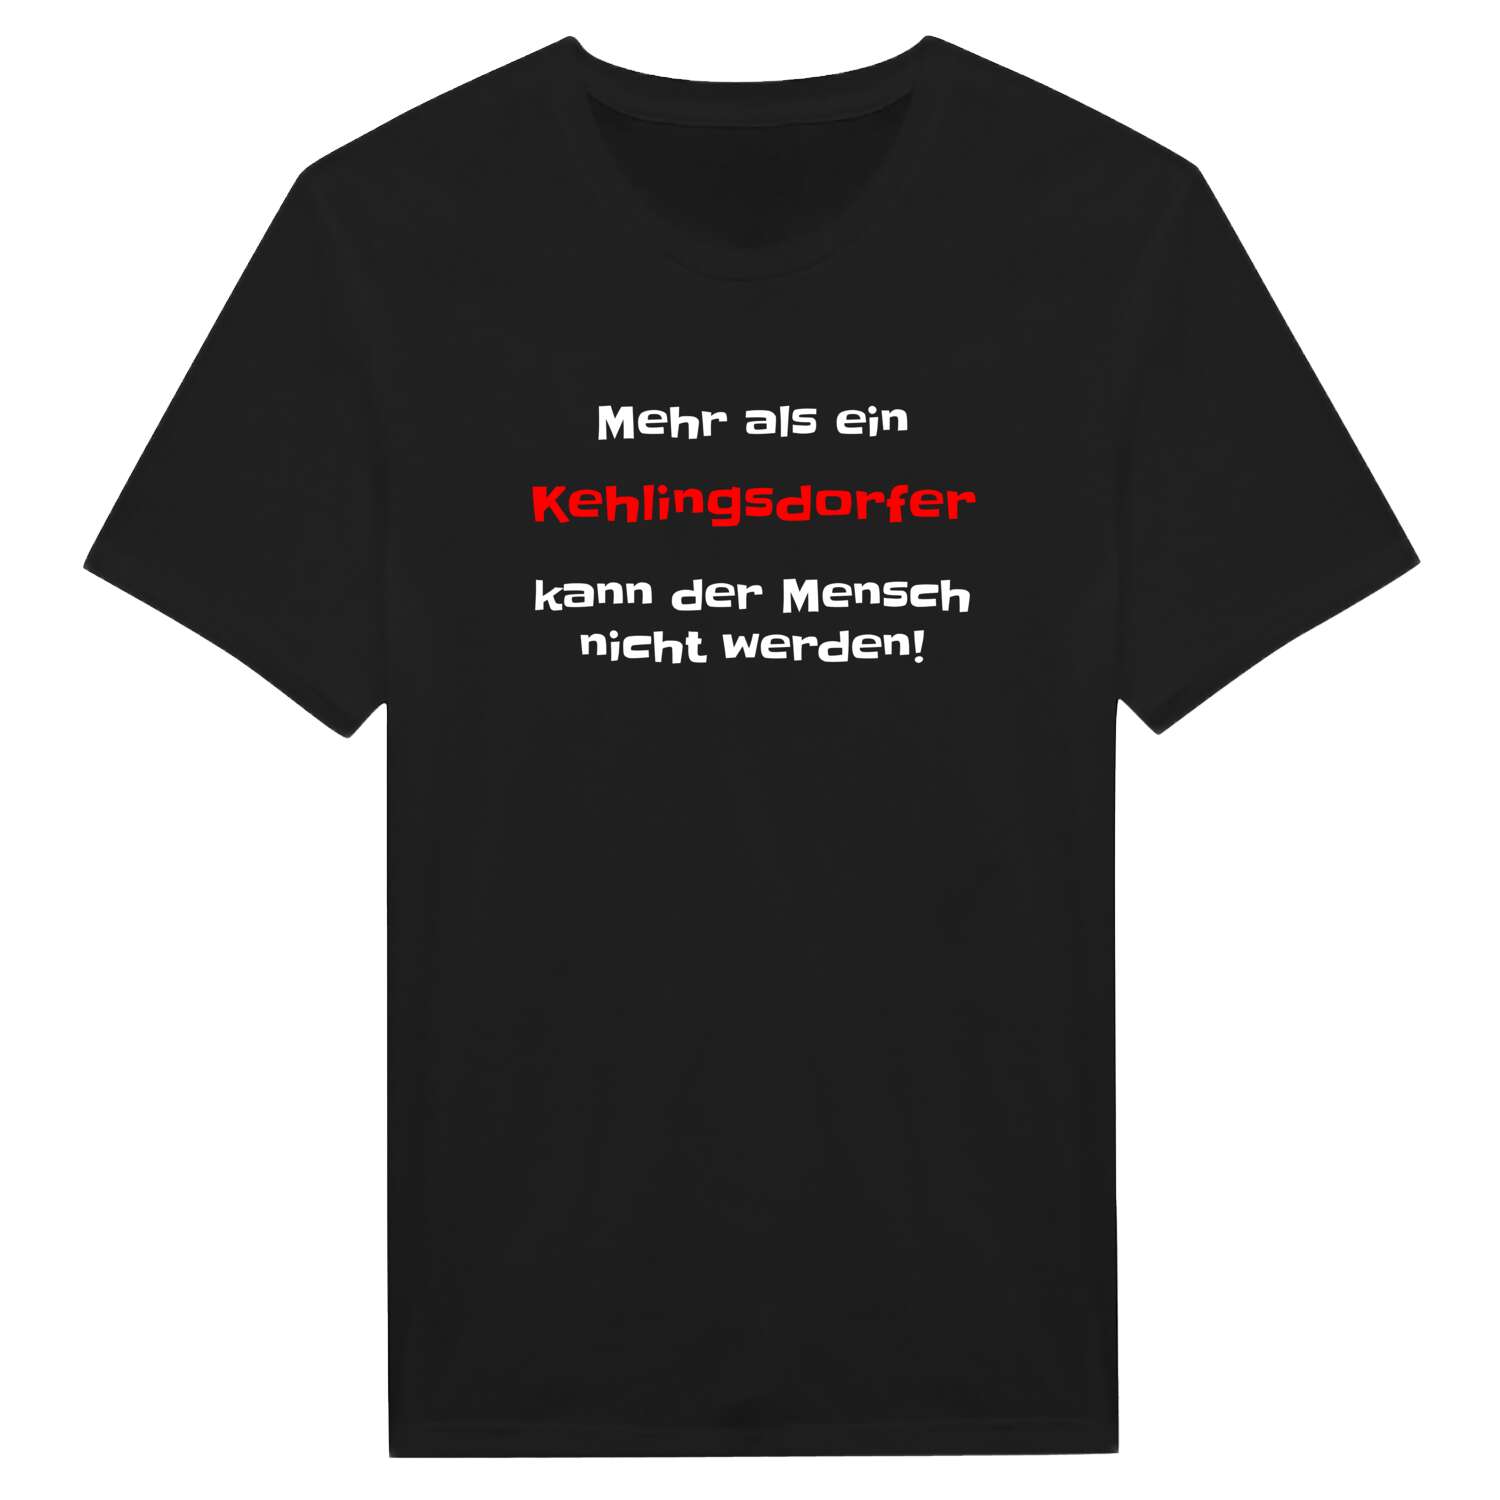 Kehlingsdorf T-Shirt »Mehr als ein«